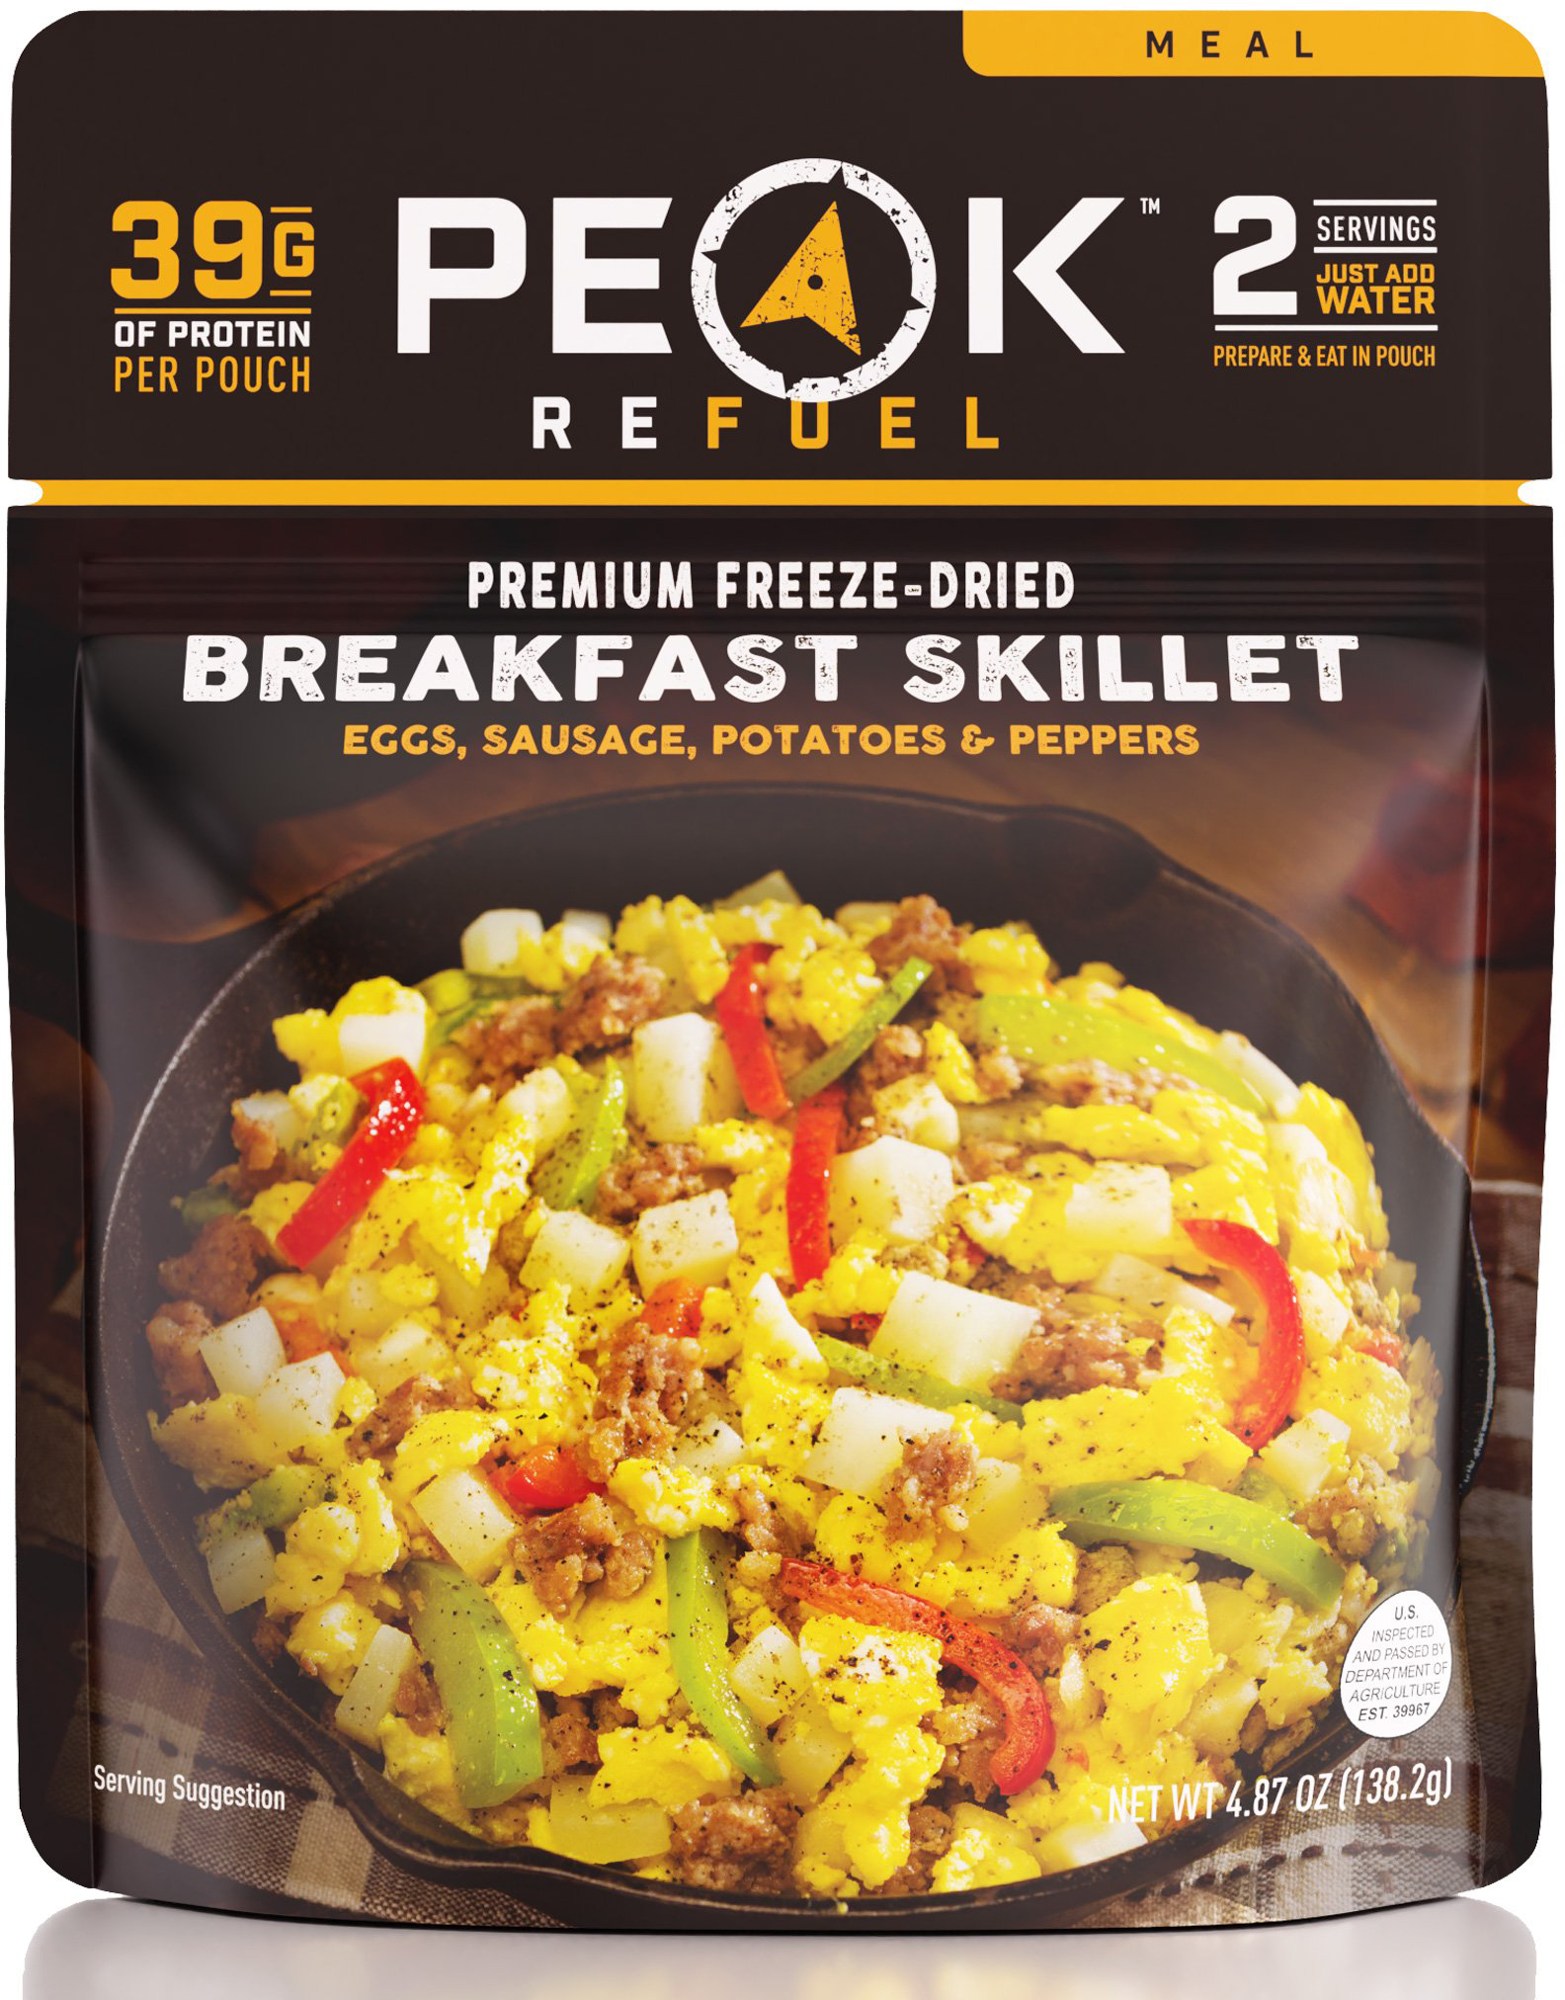 Сковорода для завтрака — 2 порции PEAK REFUEL